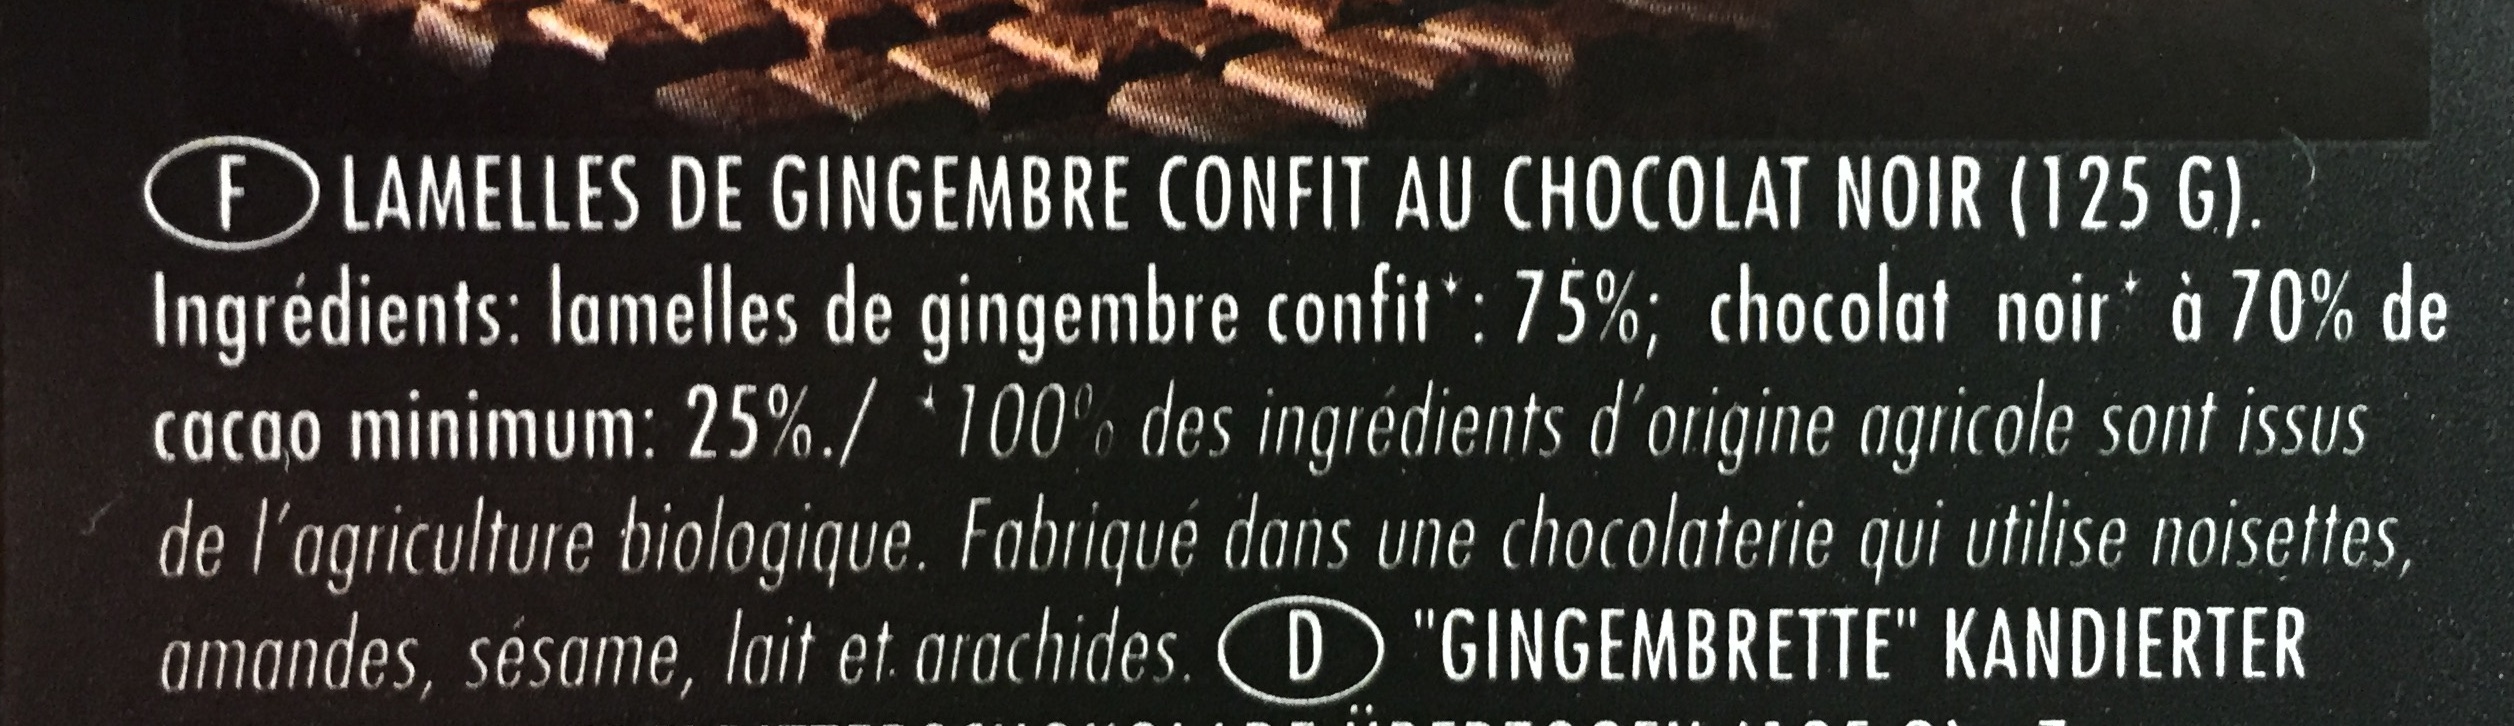 Gingembrettes confites chocolat noir - Ingrédients